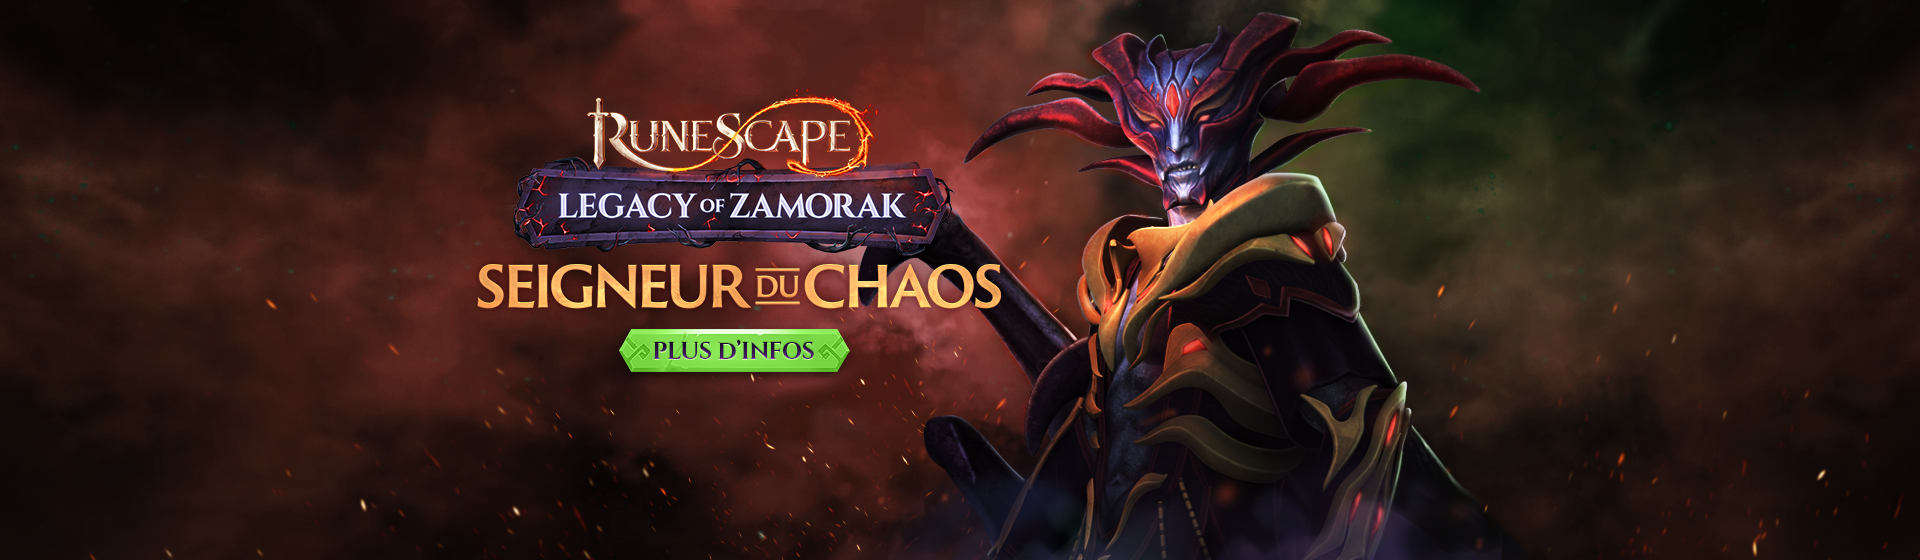 Zamorak, seigneur du chaos